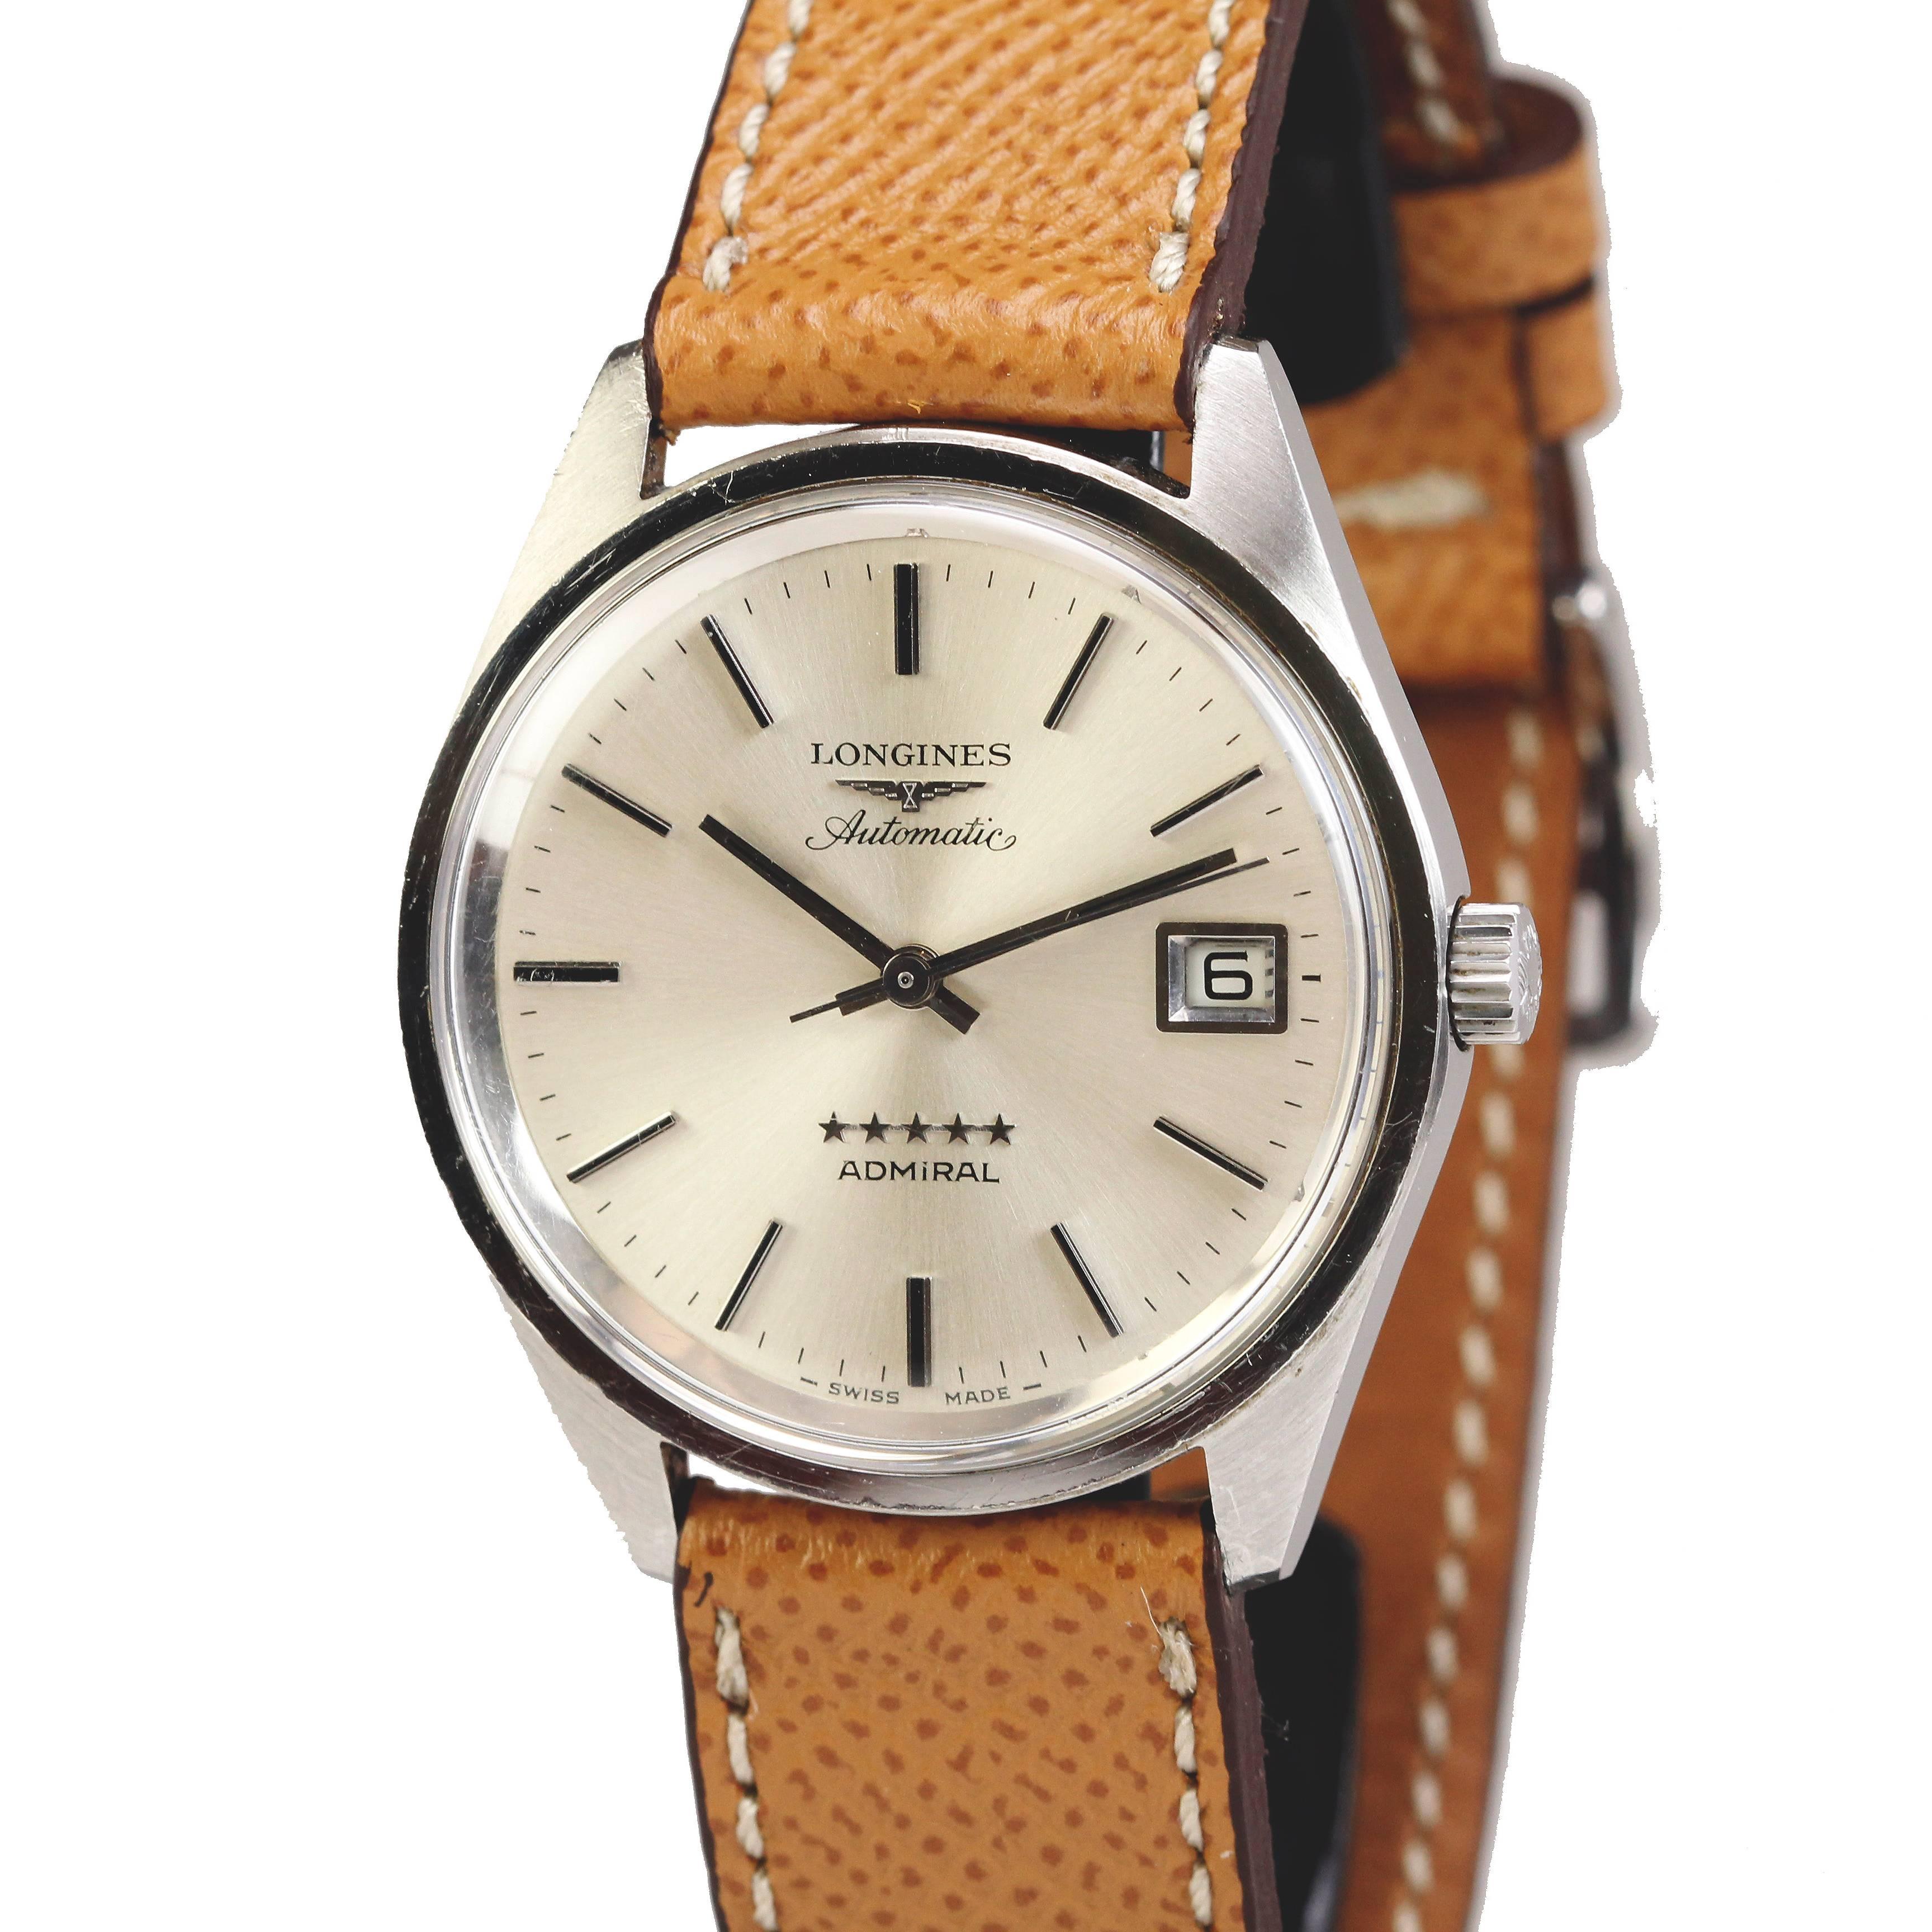 Longines Stainless Steel Admiral 5 Star Calendar Wristwatch Ref 8336/3